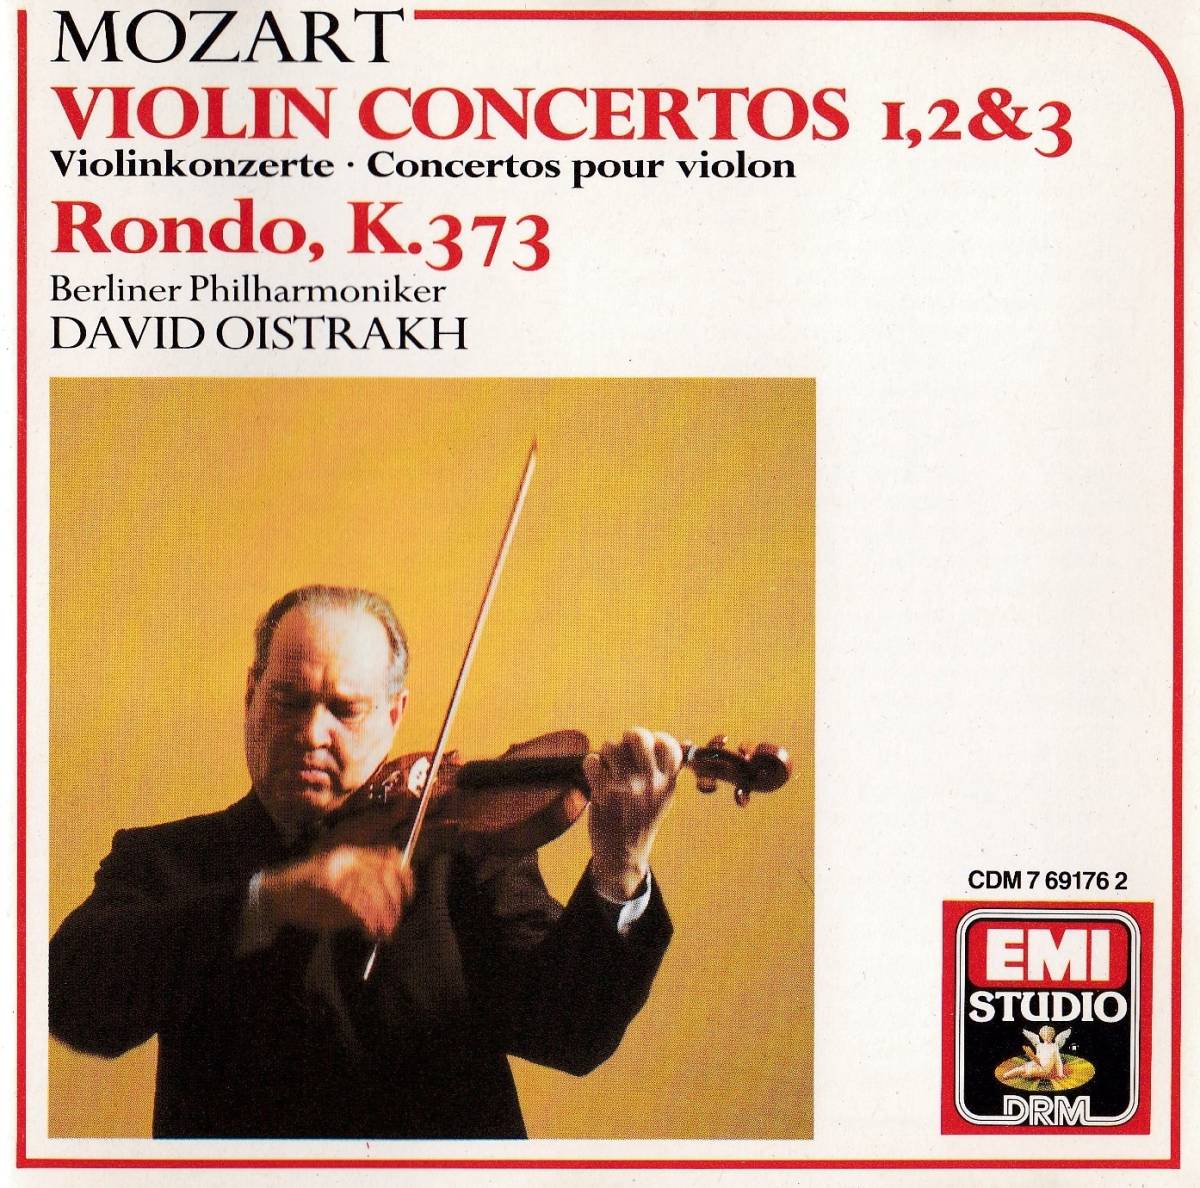 Mozart Violin. Моцарт со скрипкой. Mozart - the Violin Concertos. Arabella Steinbacher / Mozart: Violin Concertos nos. 1 & 2. Музыка скрипка моцарт